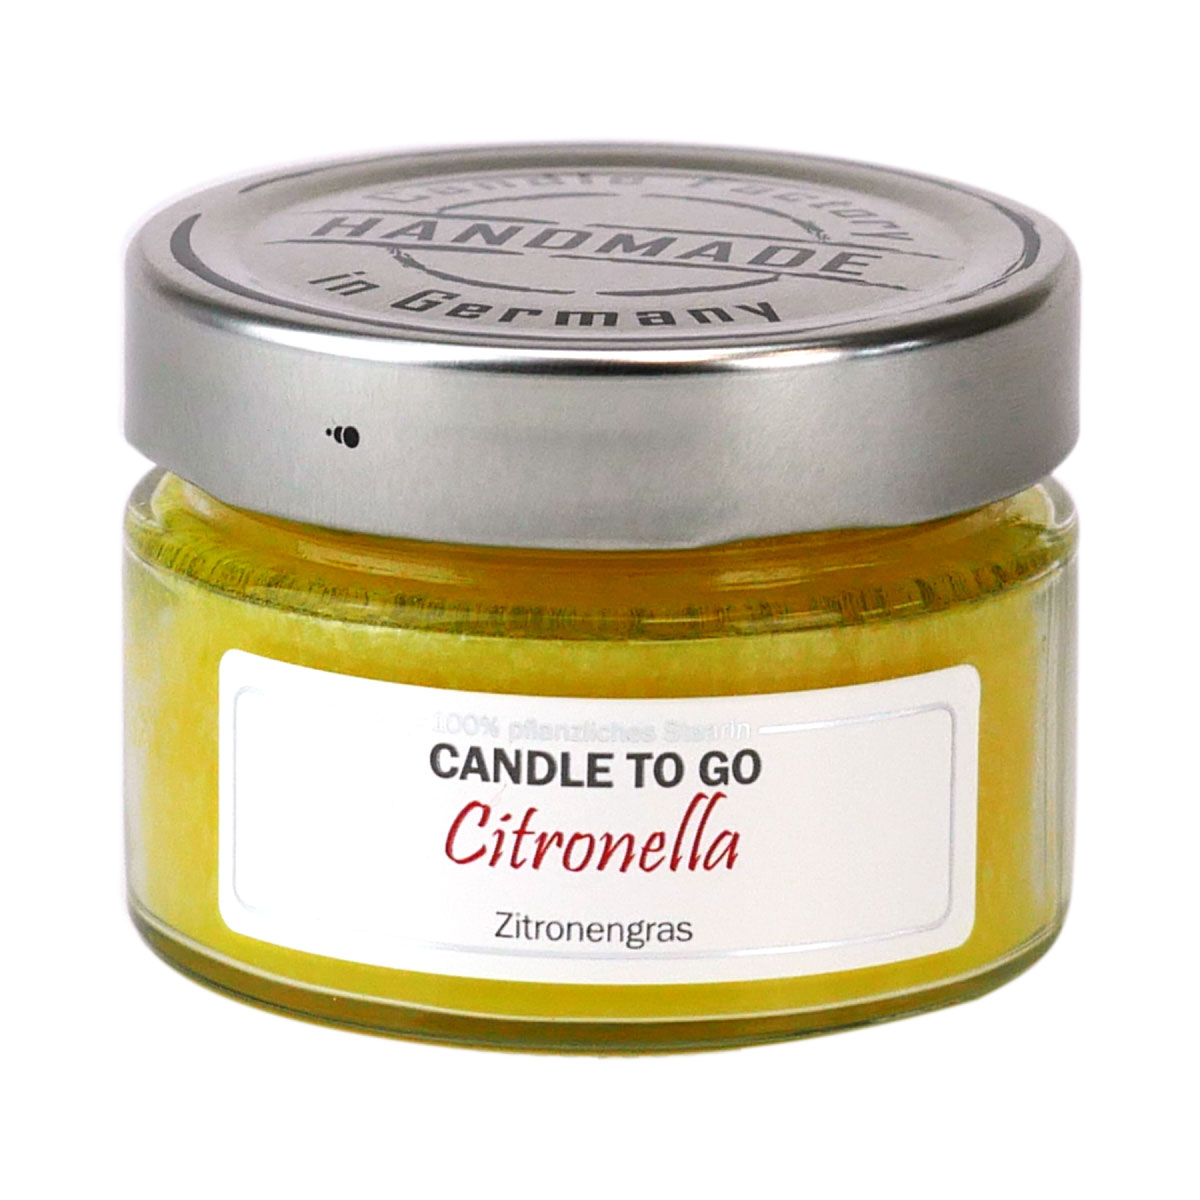 Citronella - Candle to Go die Duftkerze für unterwegs